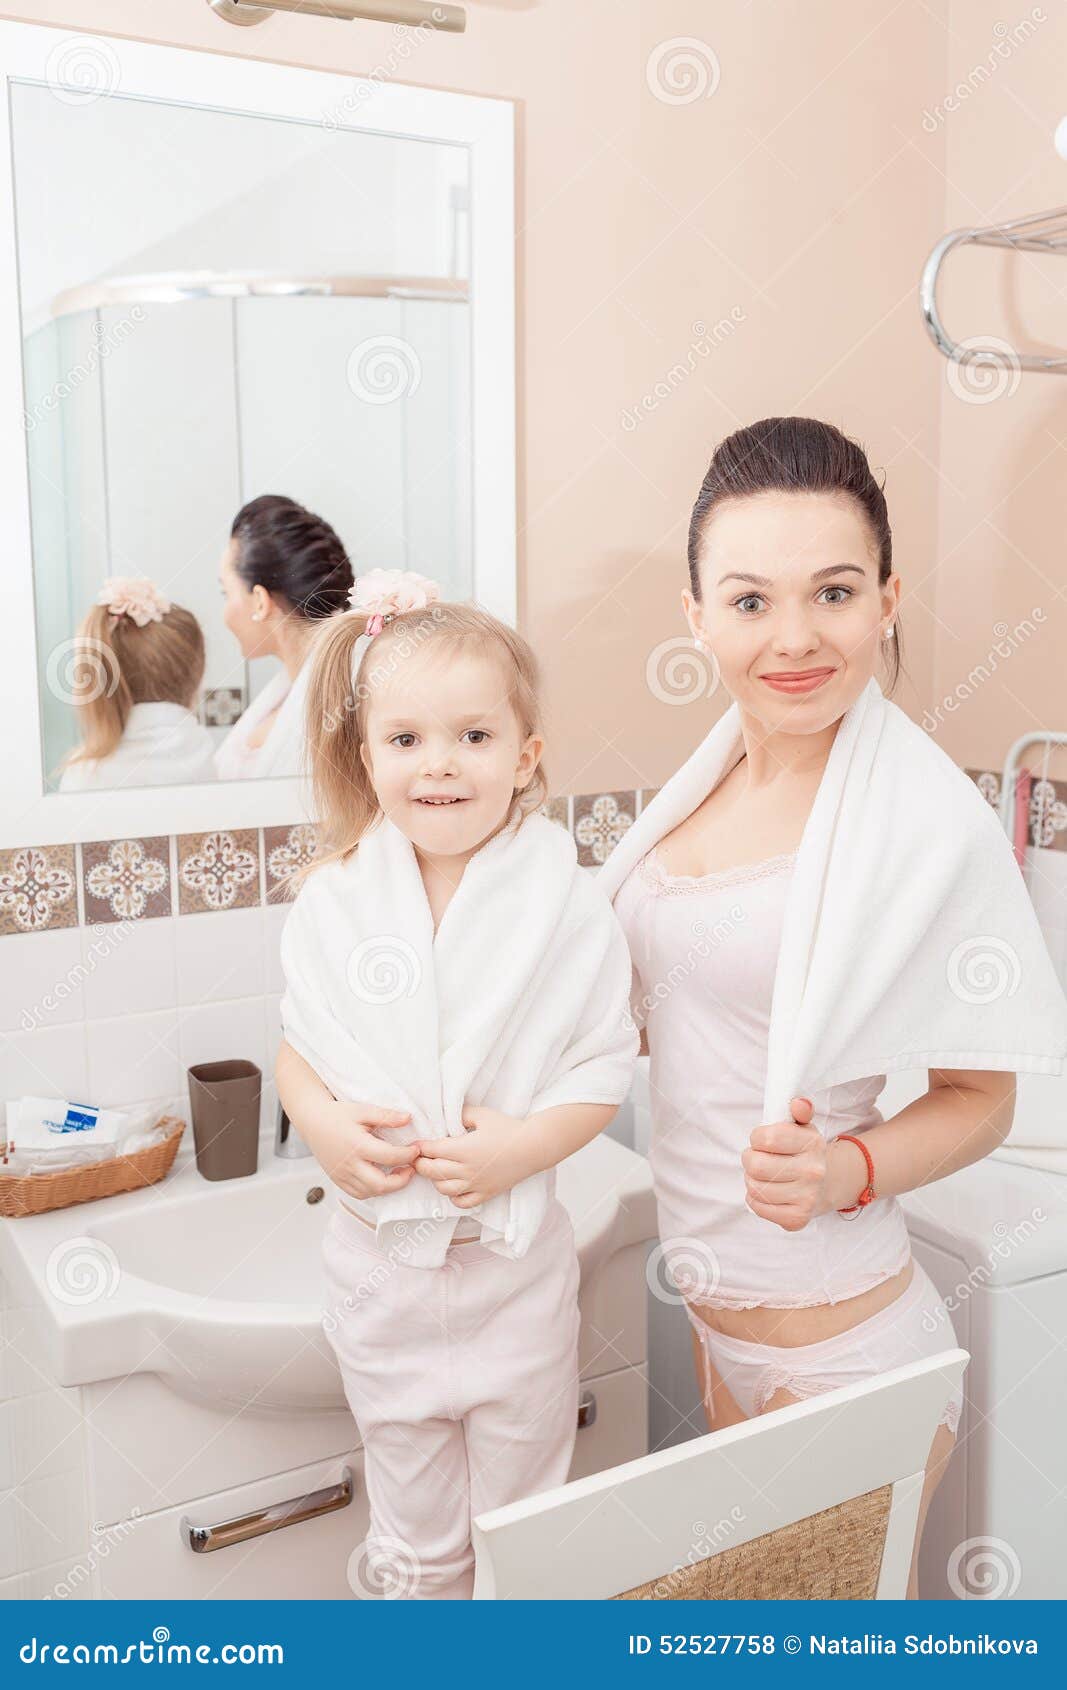 Дочь в душе видео. Дочь в ванной. Дочка ванна. Фотосессия в ванне мама и дочка. Дочка в ванной.